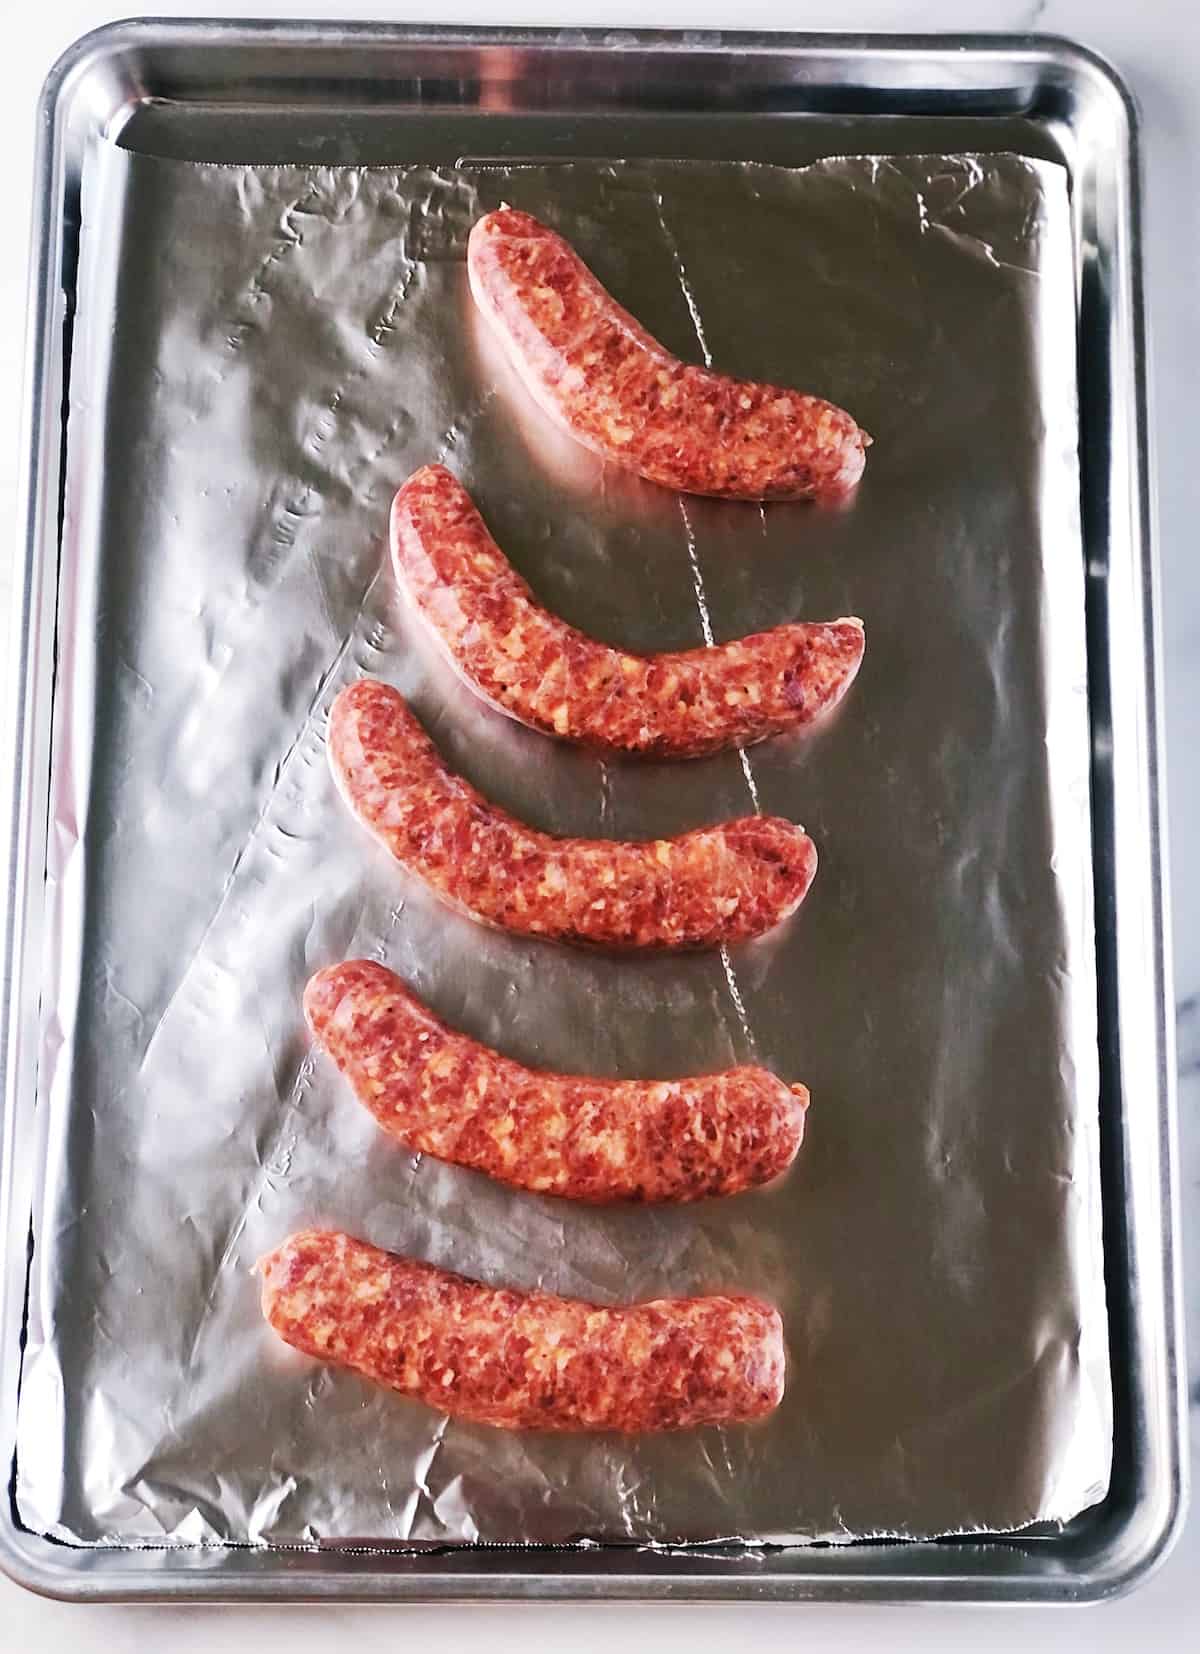 Italian sausage links